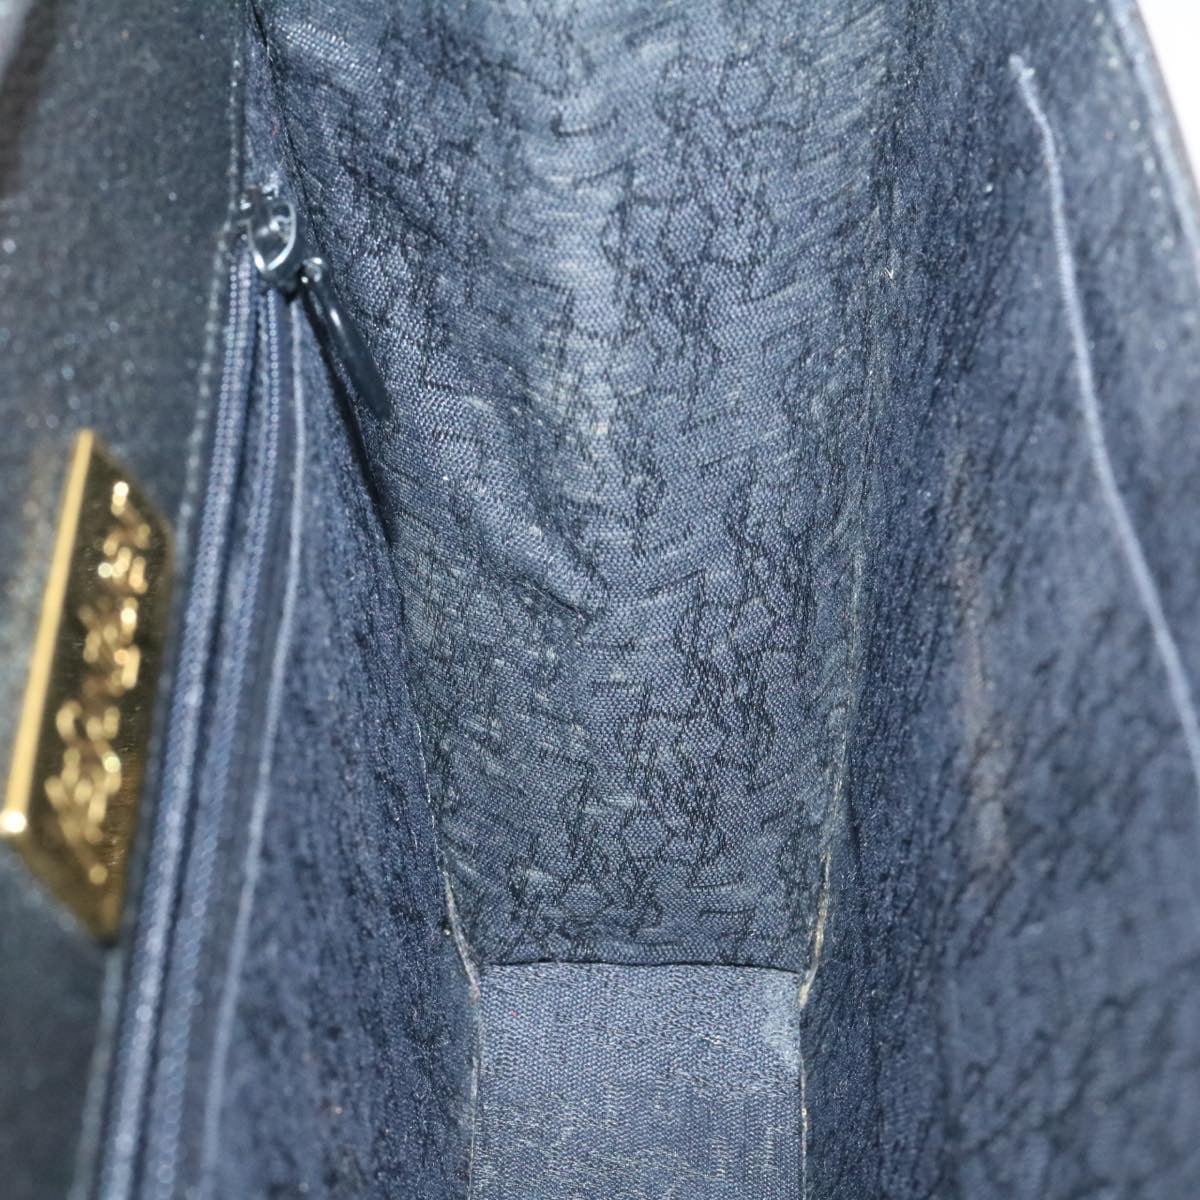 SAINT LAURENT Shoulder Bag Leather Black Auth am1347s